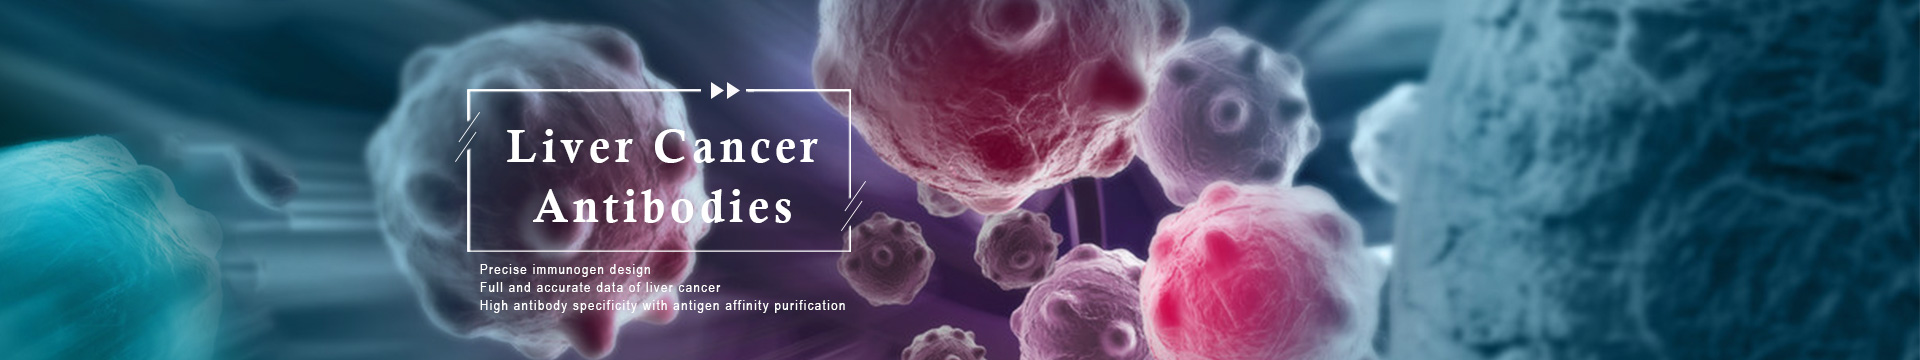 Liver Cancer Antibodies